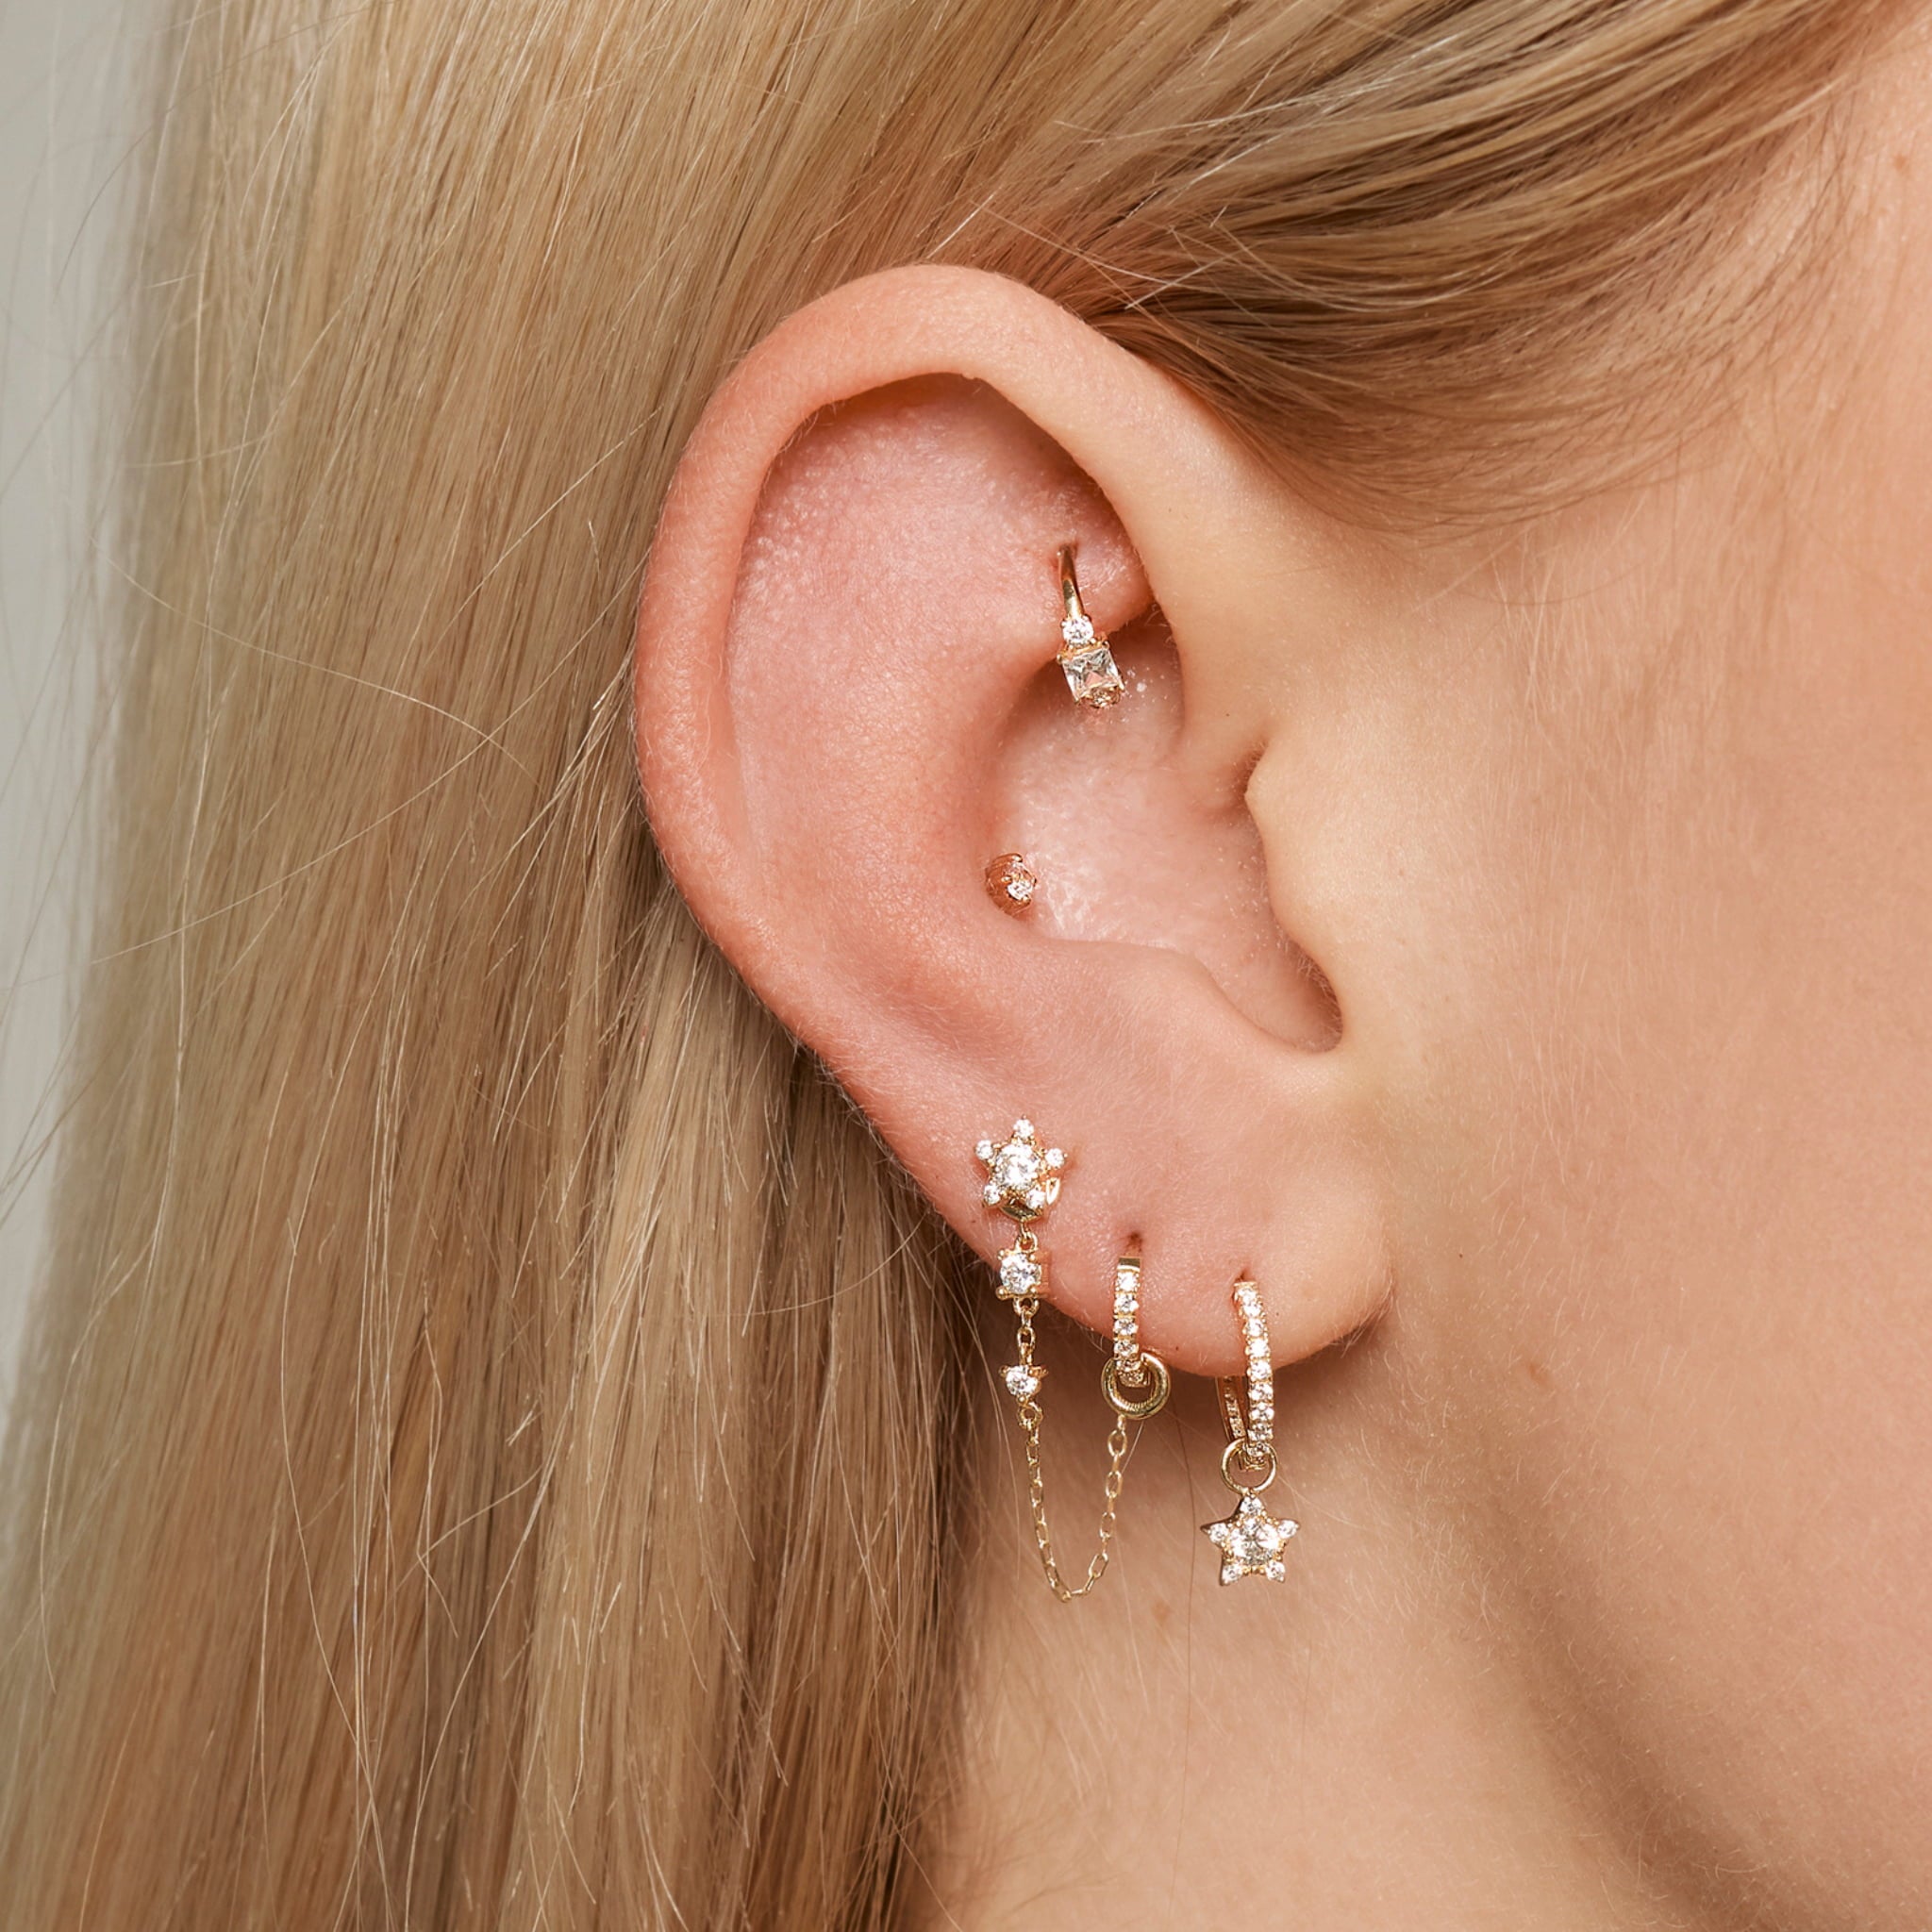 Ohr mit Stern Einhänger für Ohrringe